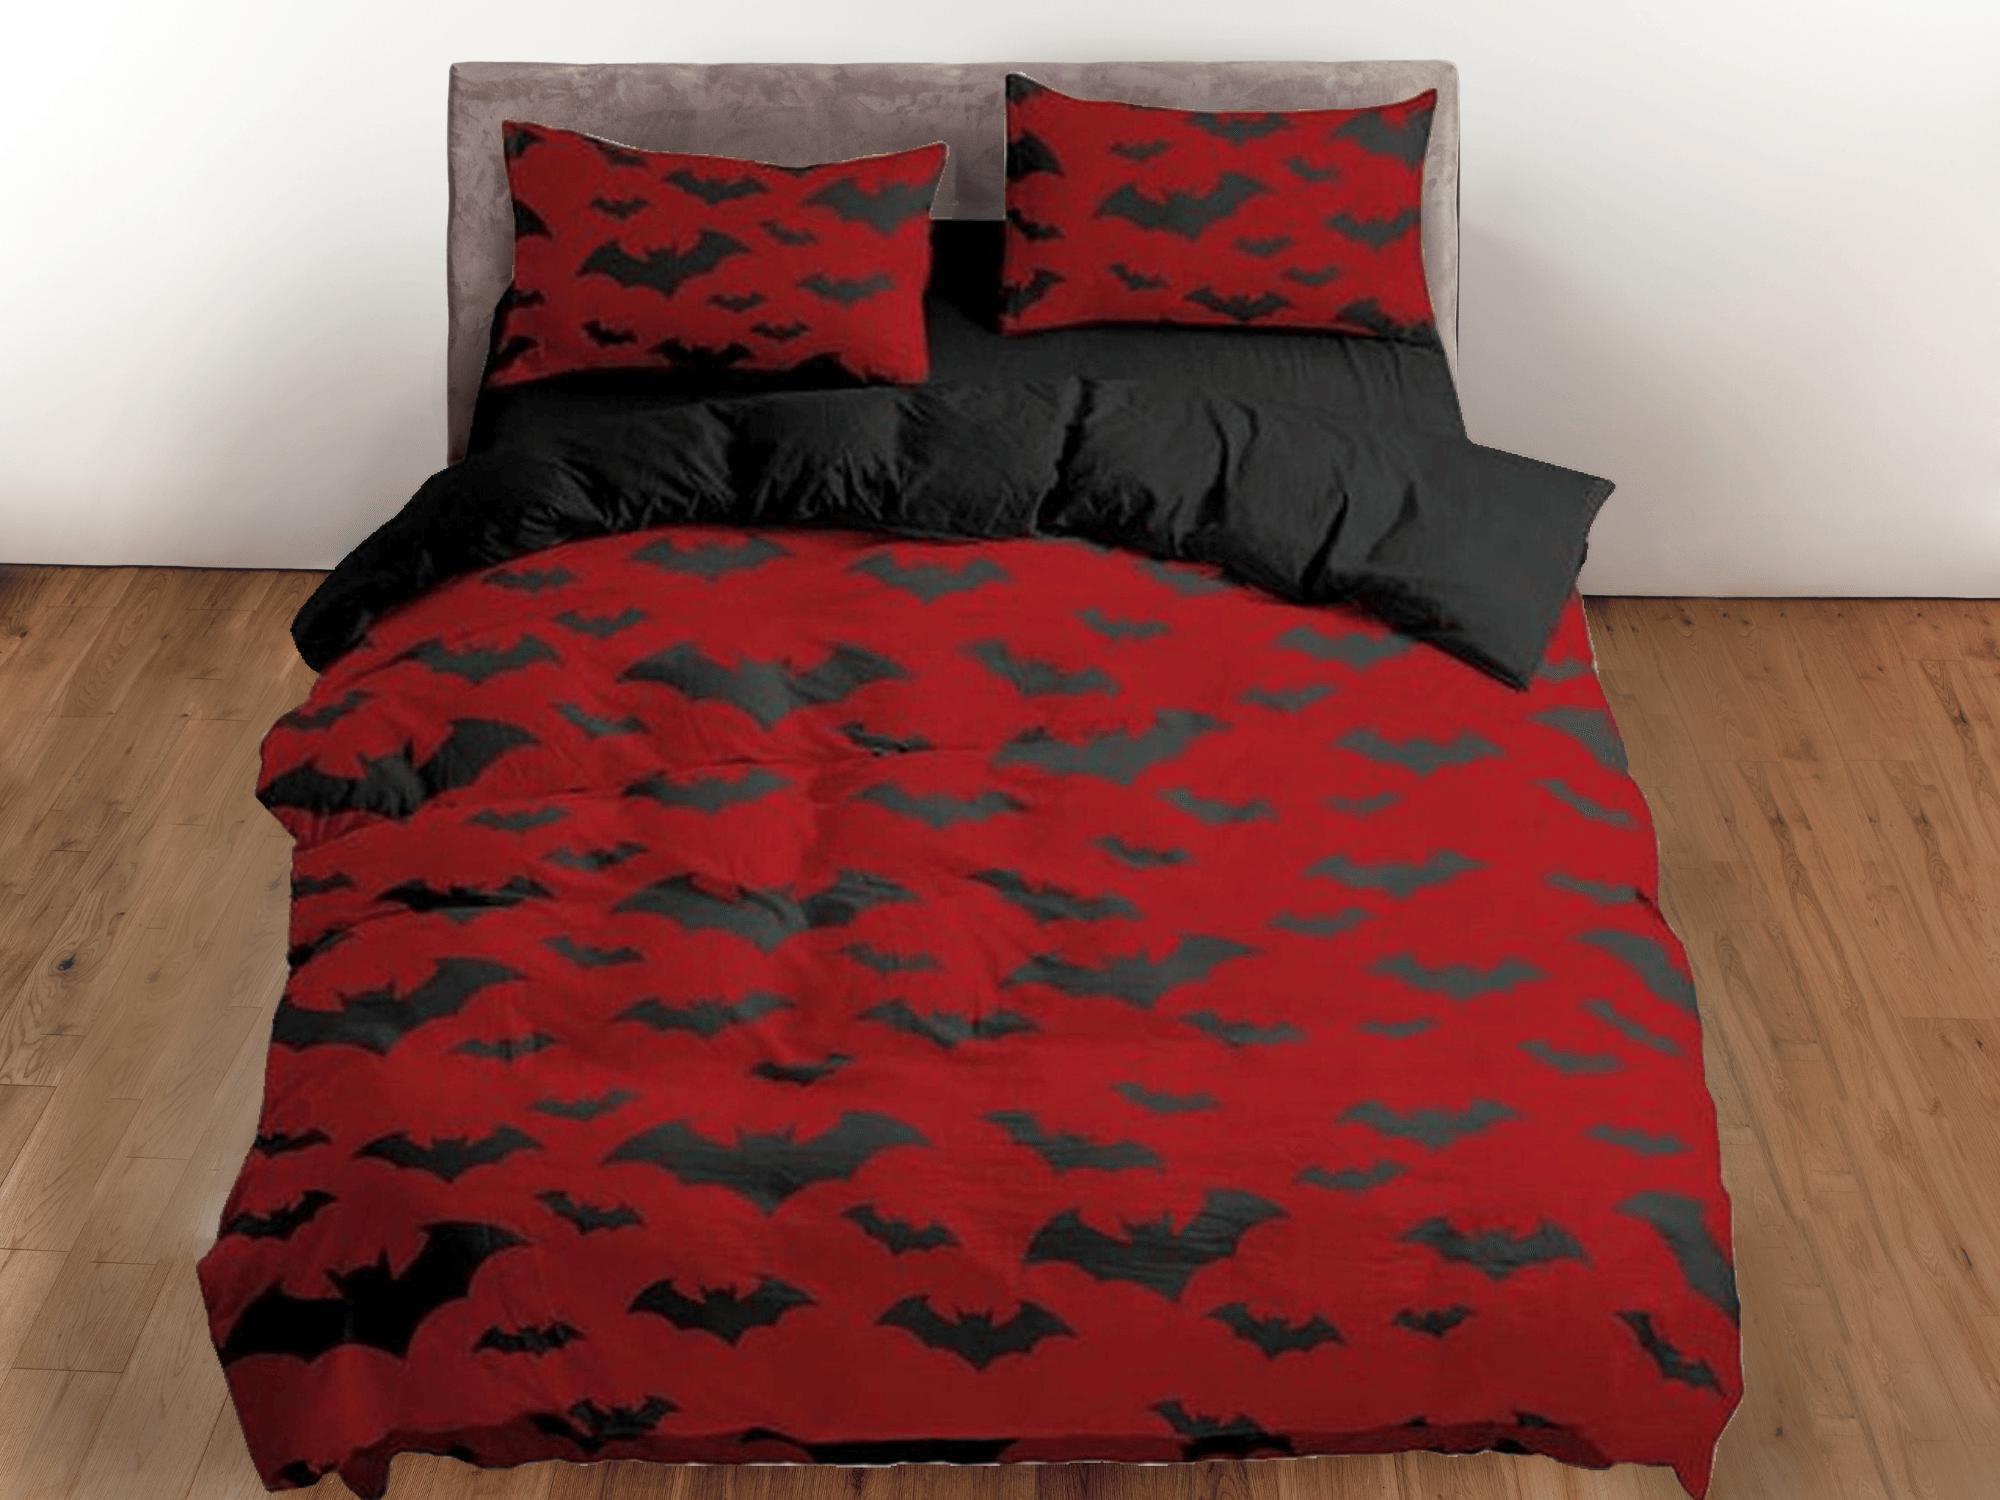 daintyduvet Bat prints halloween full size bedding & pillowcase, red duvet cover dorm bedding, halloween decor, nursery toddler bedding, halloween gift